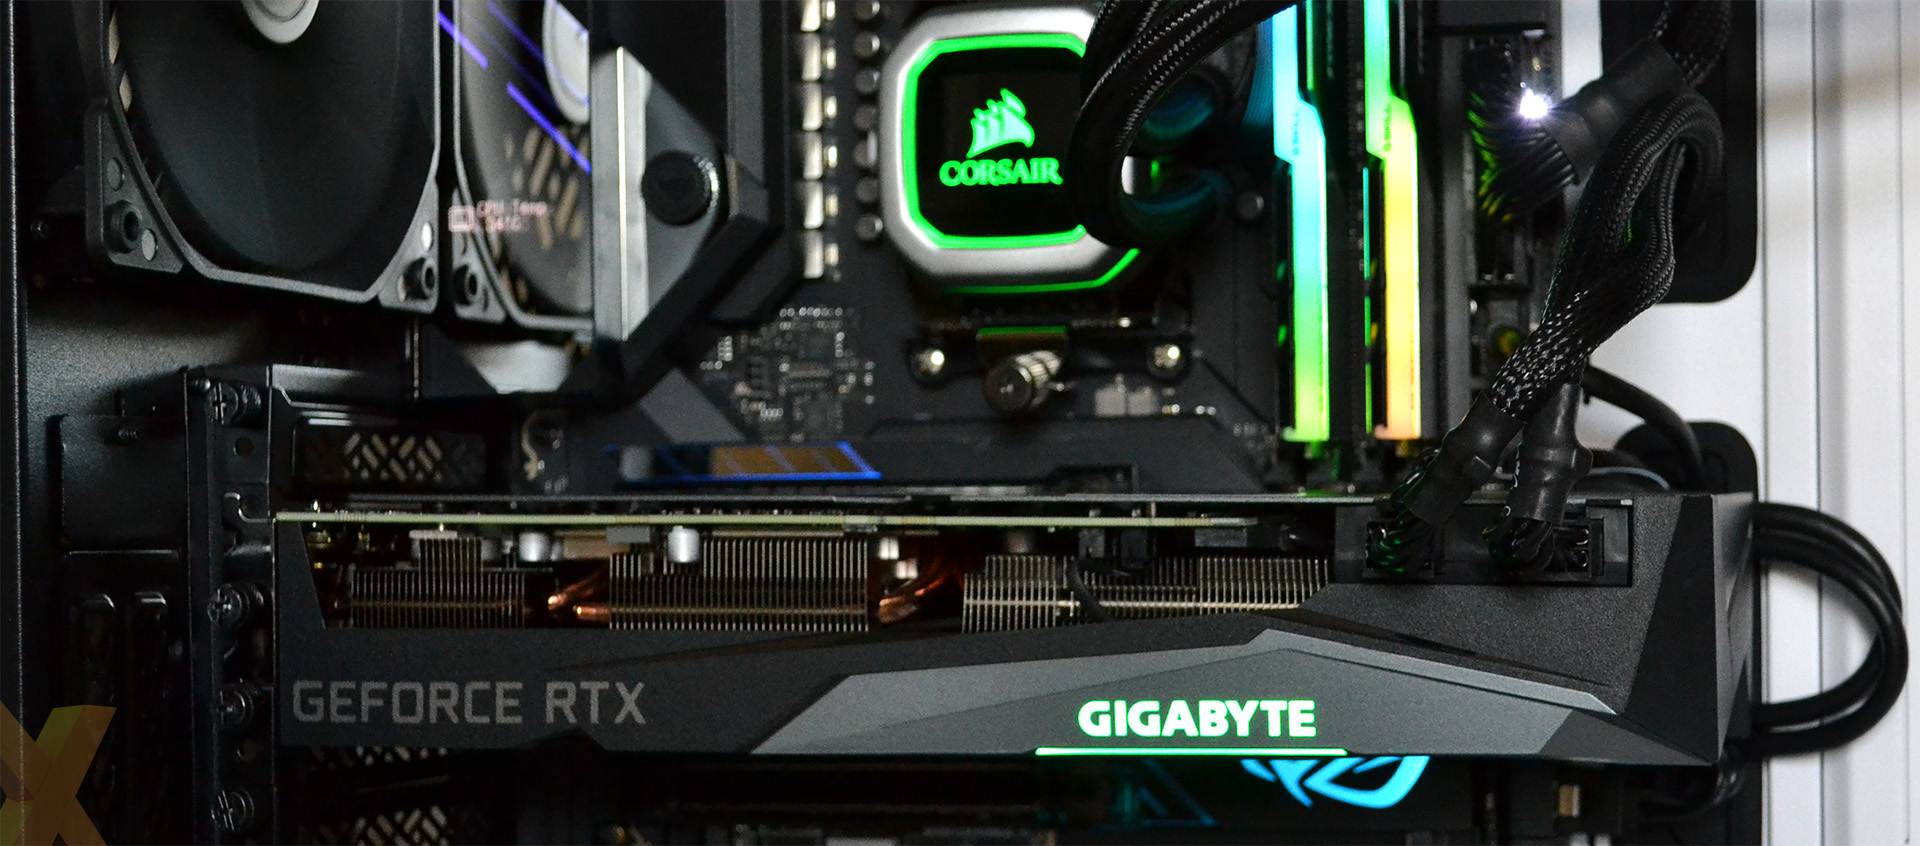 Review: Gigabyte GeForce RTX 3070 Gaming OC - Graphics - HEXUS.net